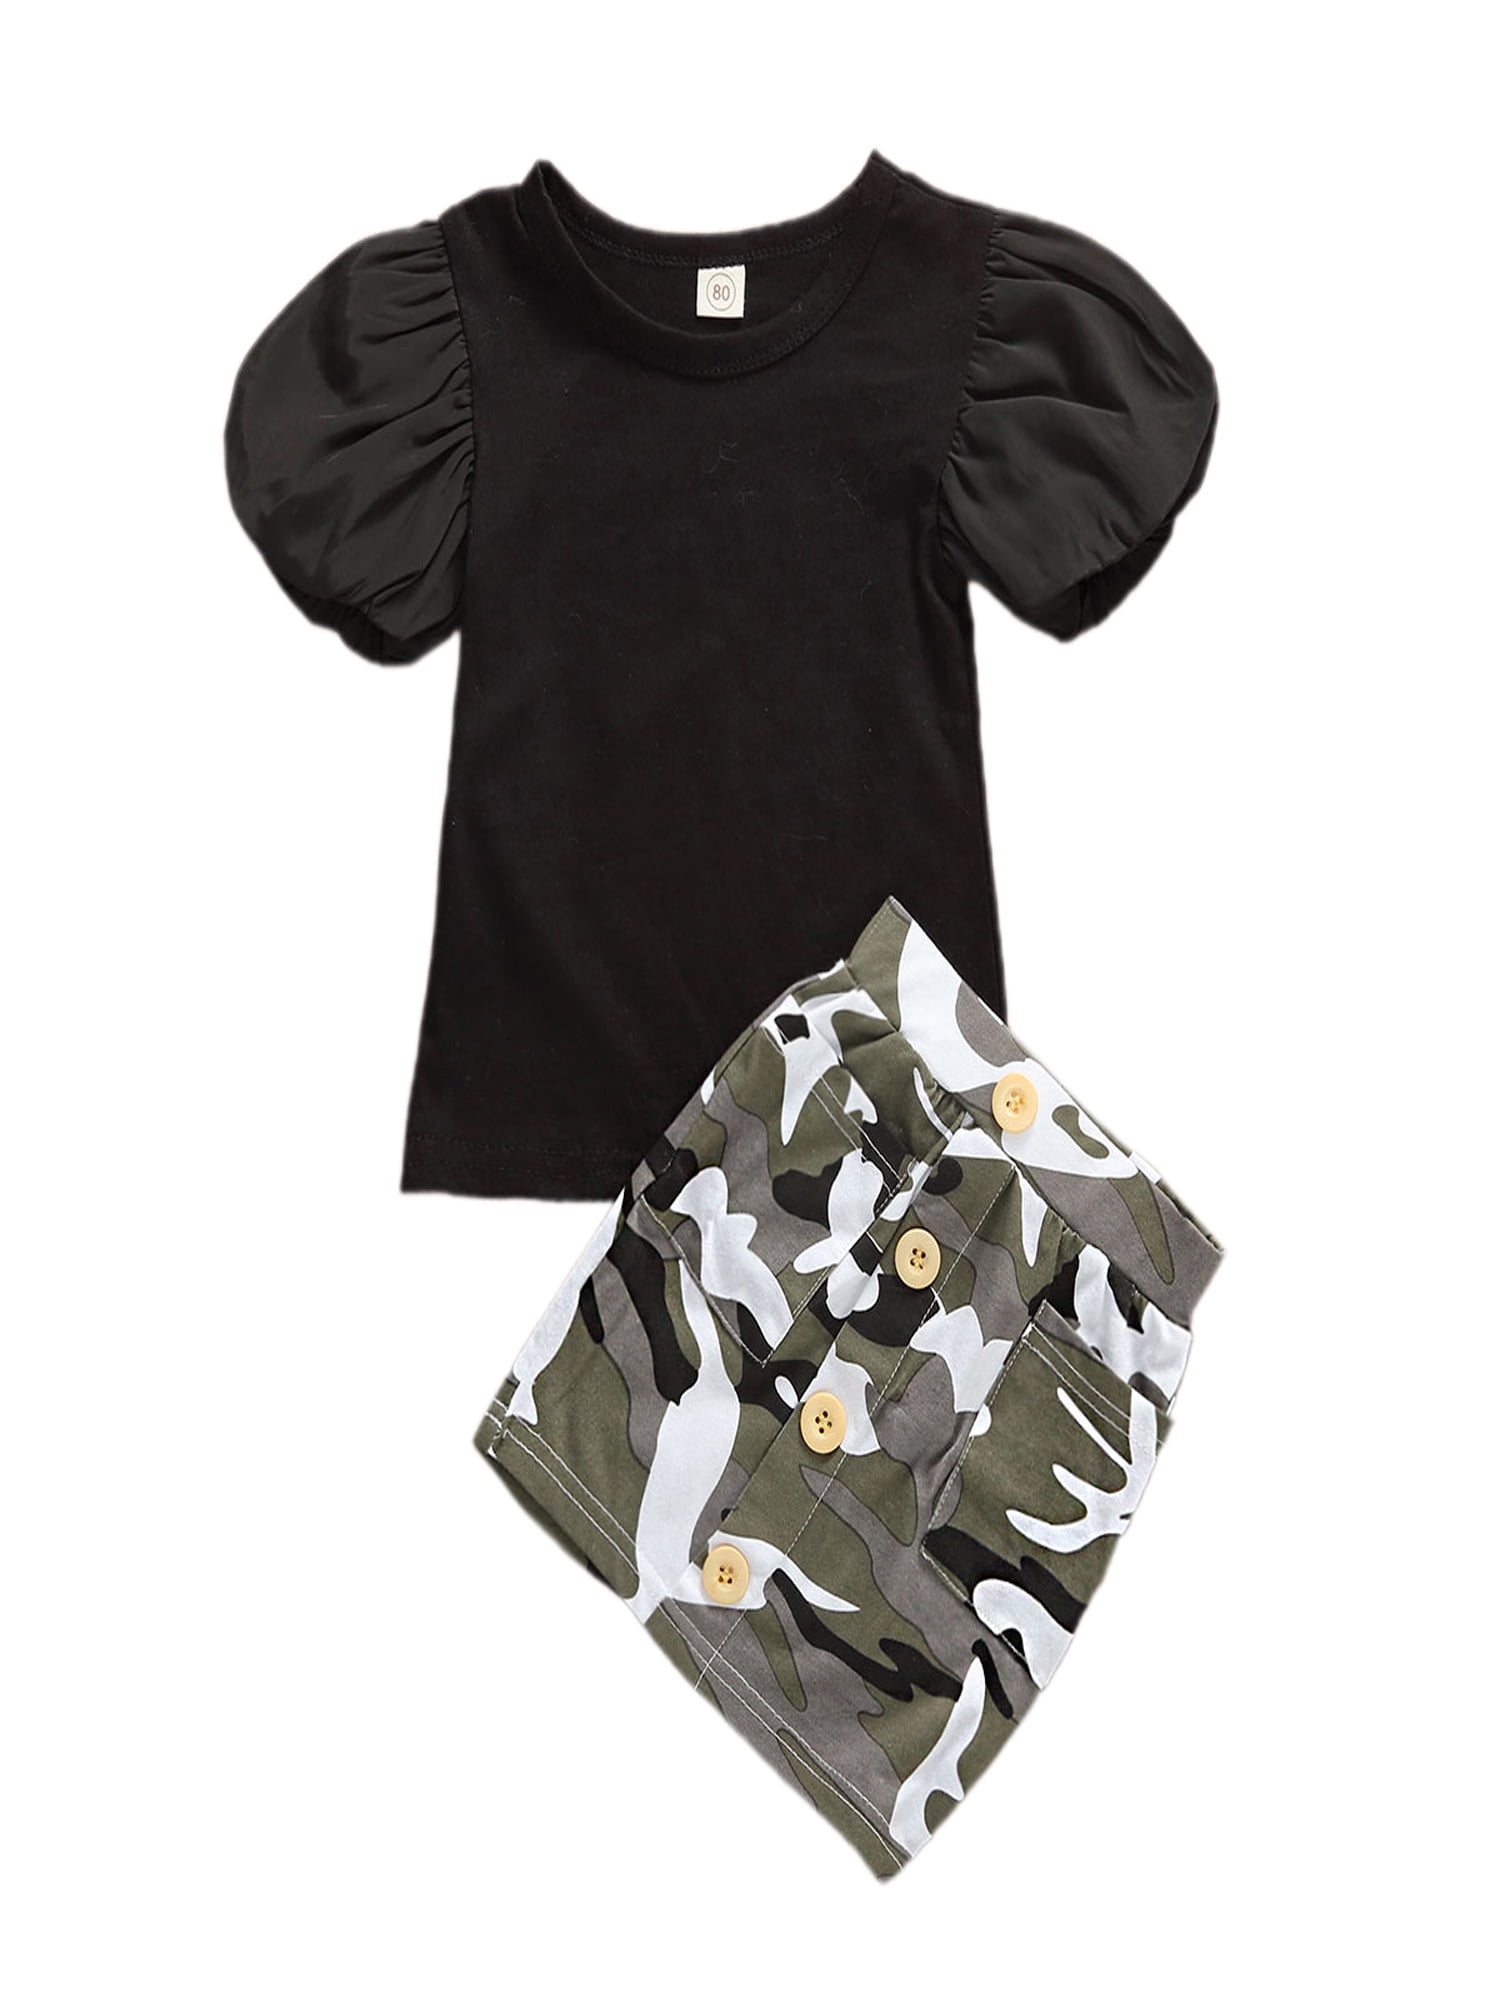 2Pcs Kids Baby Girls Short Sleeve T-shirt Tops+Camo Skirt Summer Outfits Clothes 